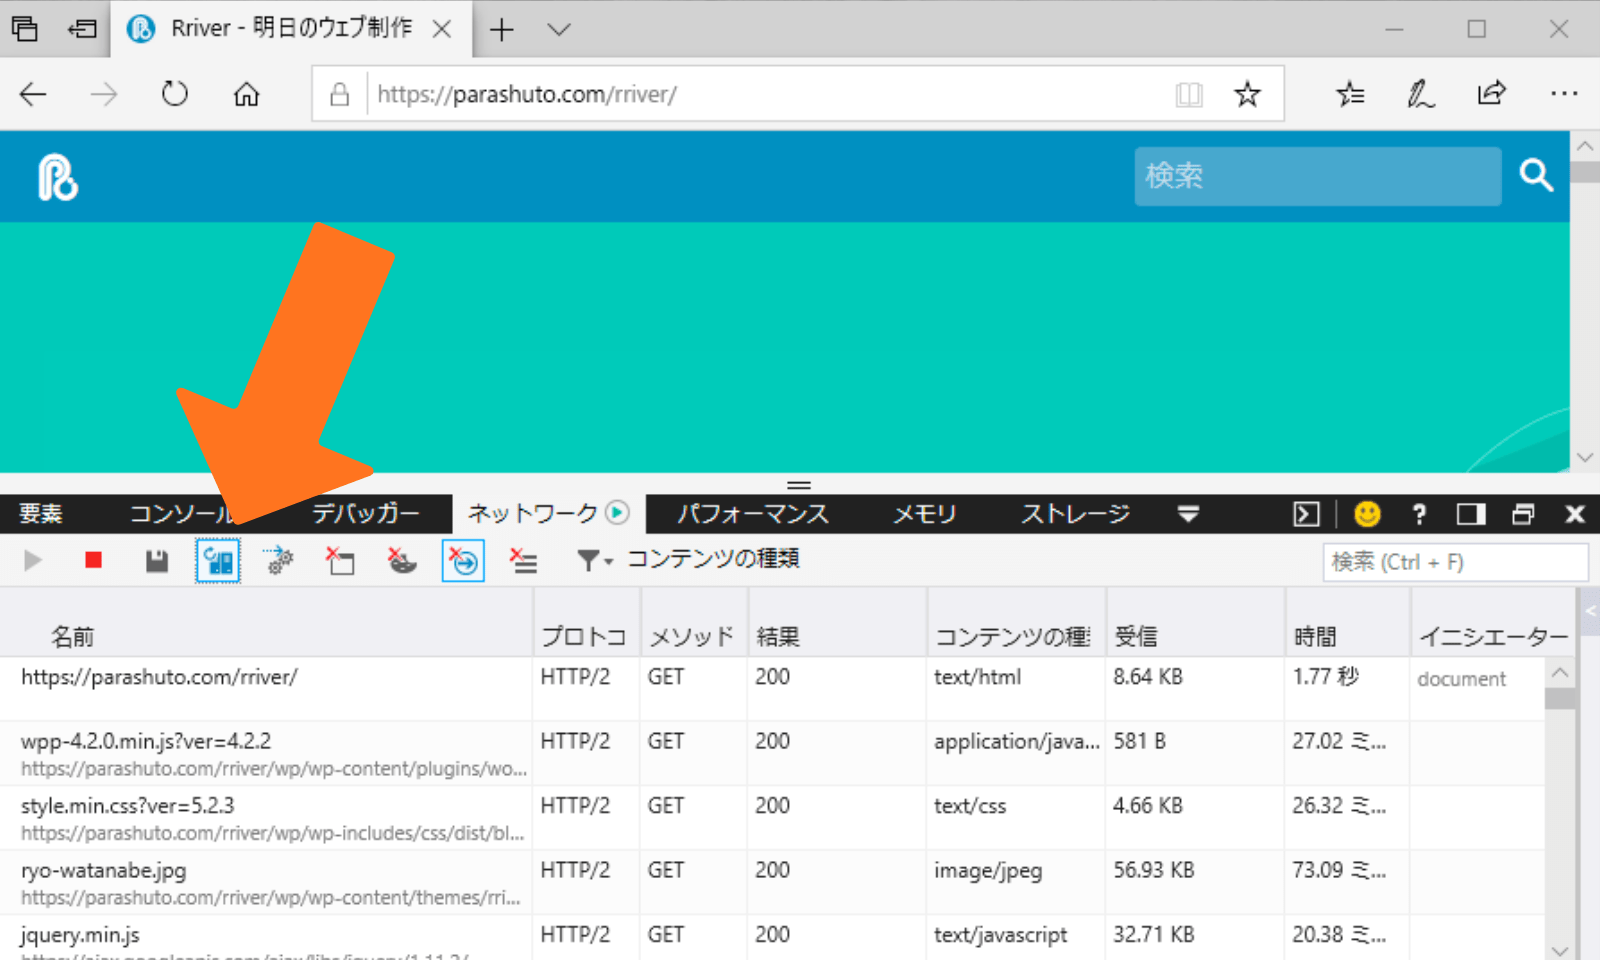 Microsoft Edgeの開発ツールでネットワークタブを開いた状態の画面。オレンジの矢印でオプションが指し示されている